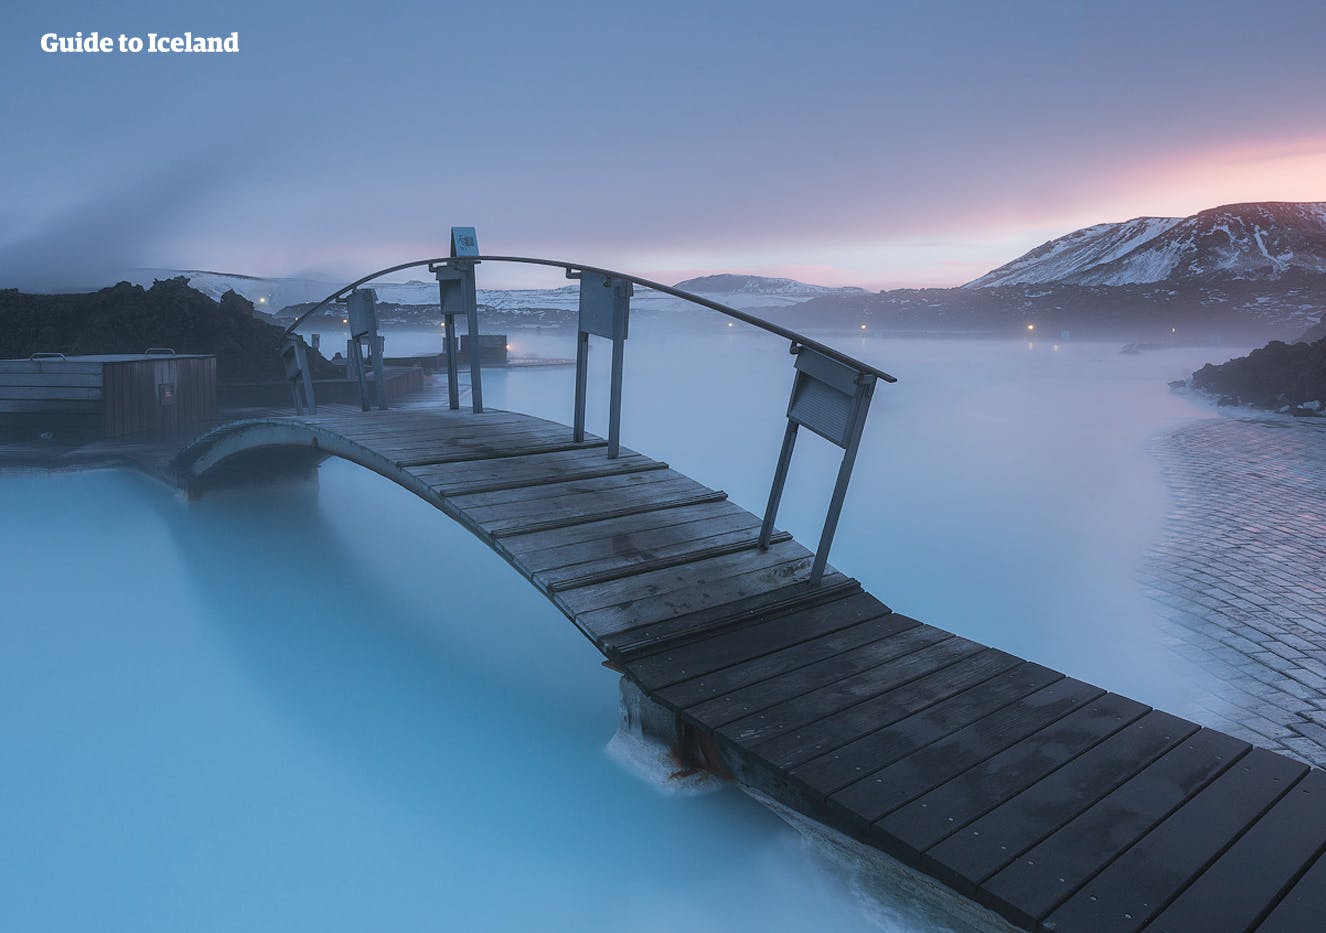 Termina tu aventura en Islandia a la perfección con un baño en el spa geotérmico de Blue Lagoon